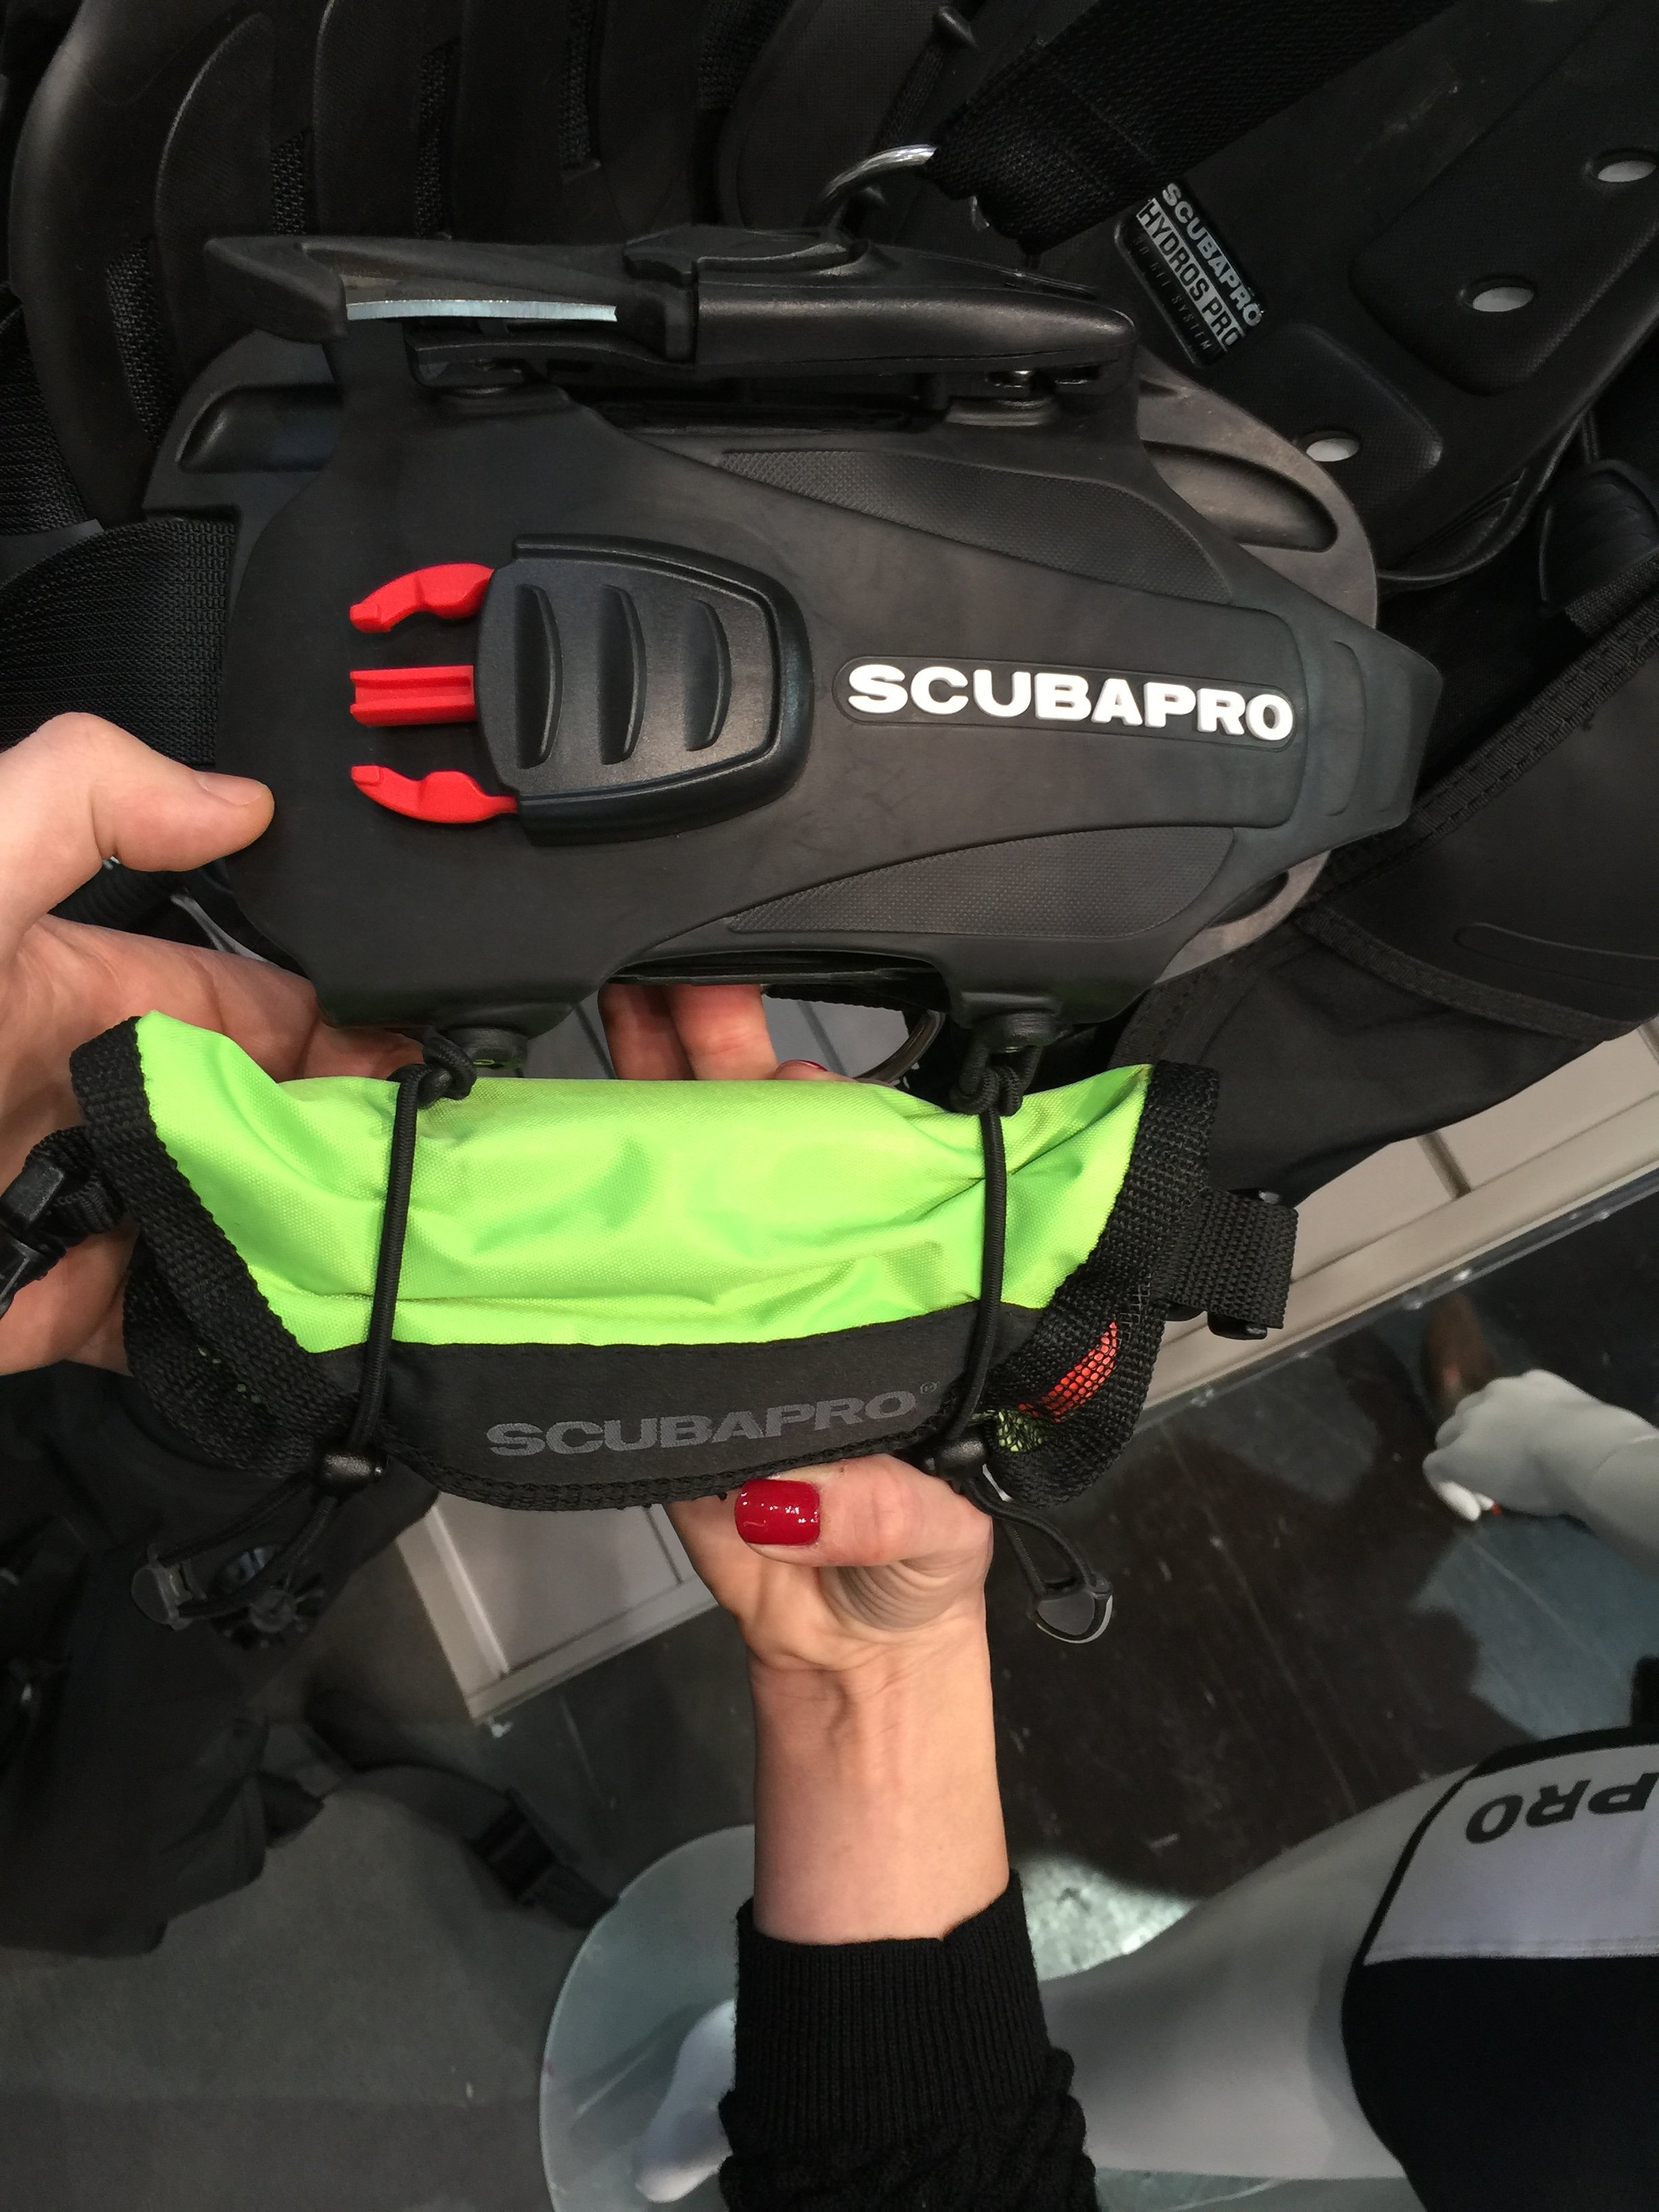 scubapro hydros pro accessories